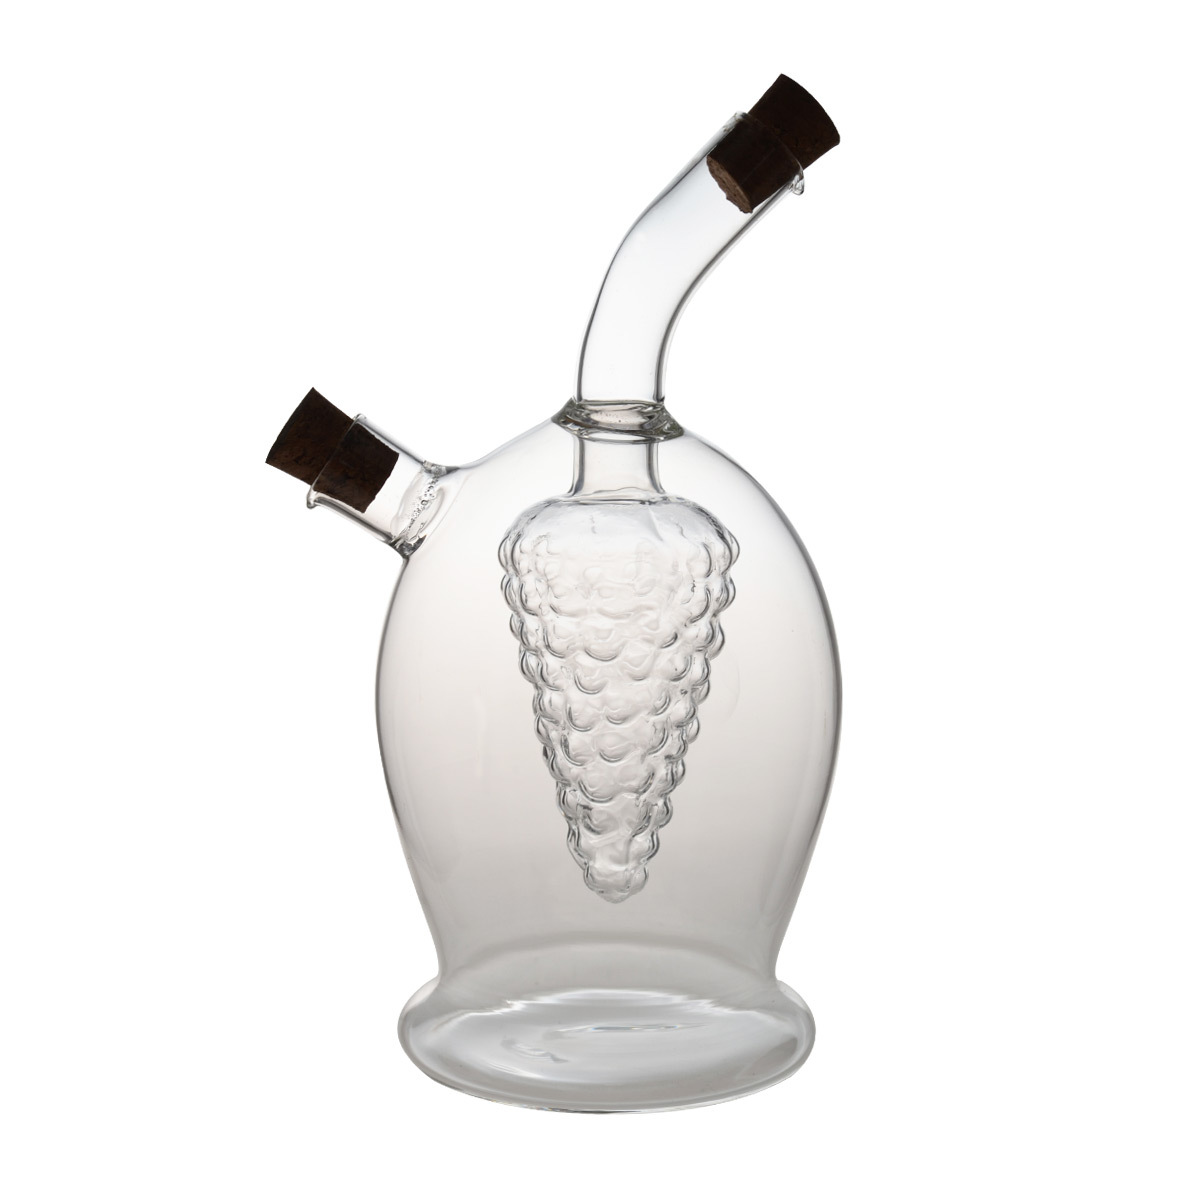 HY1305 100/300ML 2 in 1 Grape Design Borosilicate Glass Oil & Vinegar Bottle